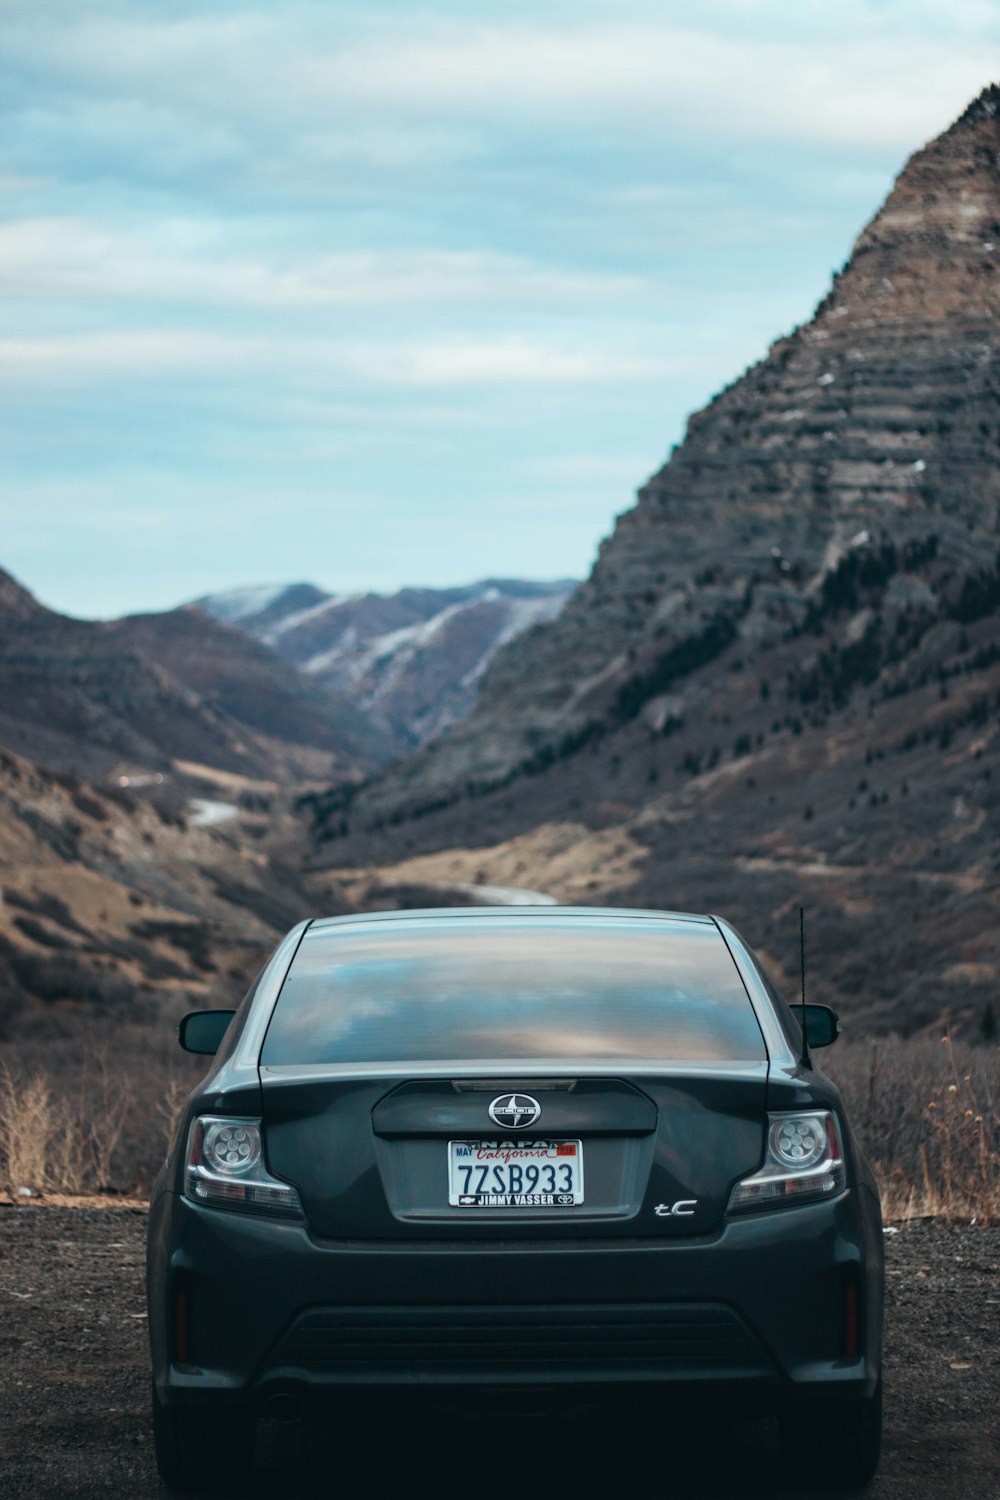 schwarzes Scion-Auto in der Nähe der Bergkette geparkt